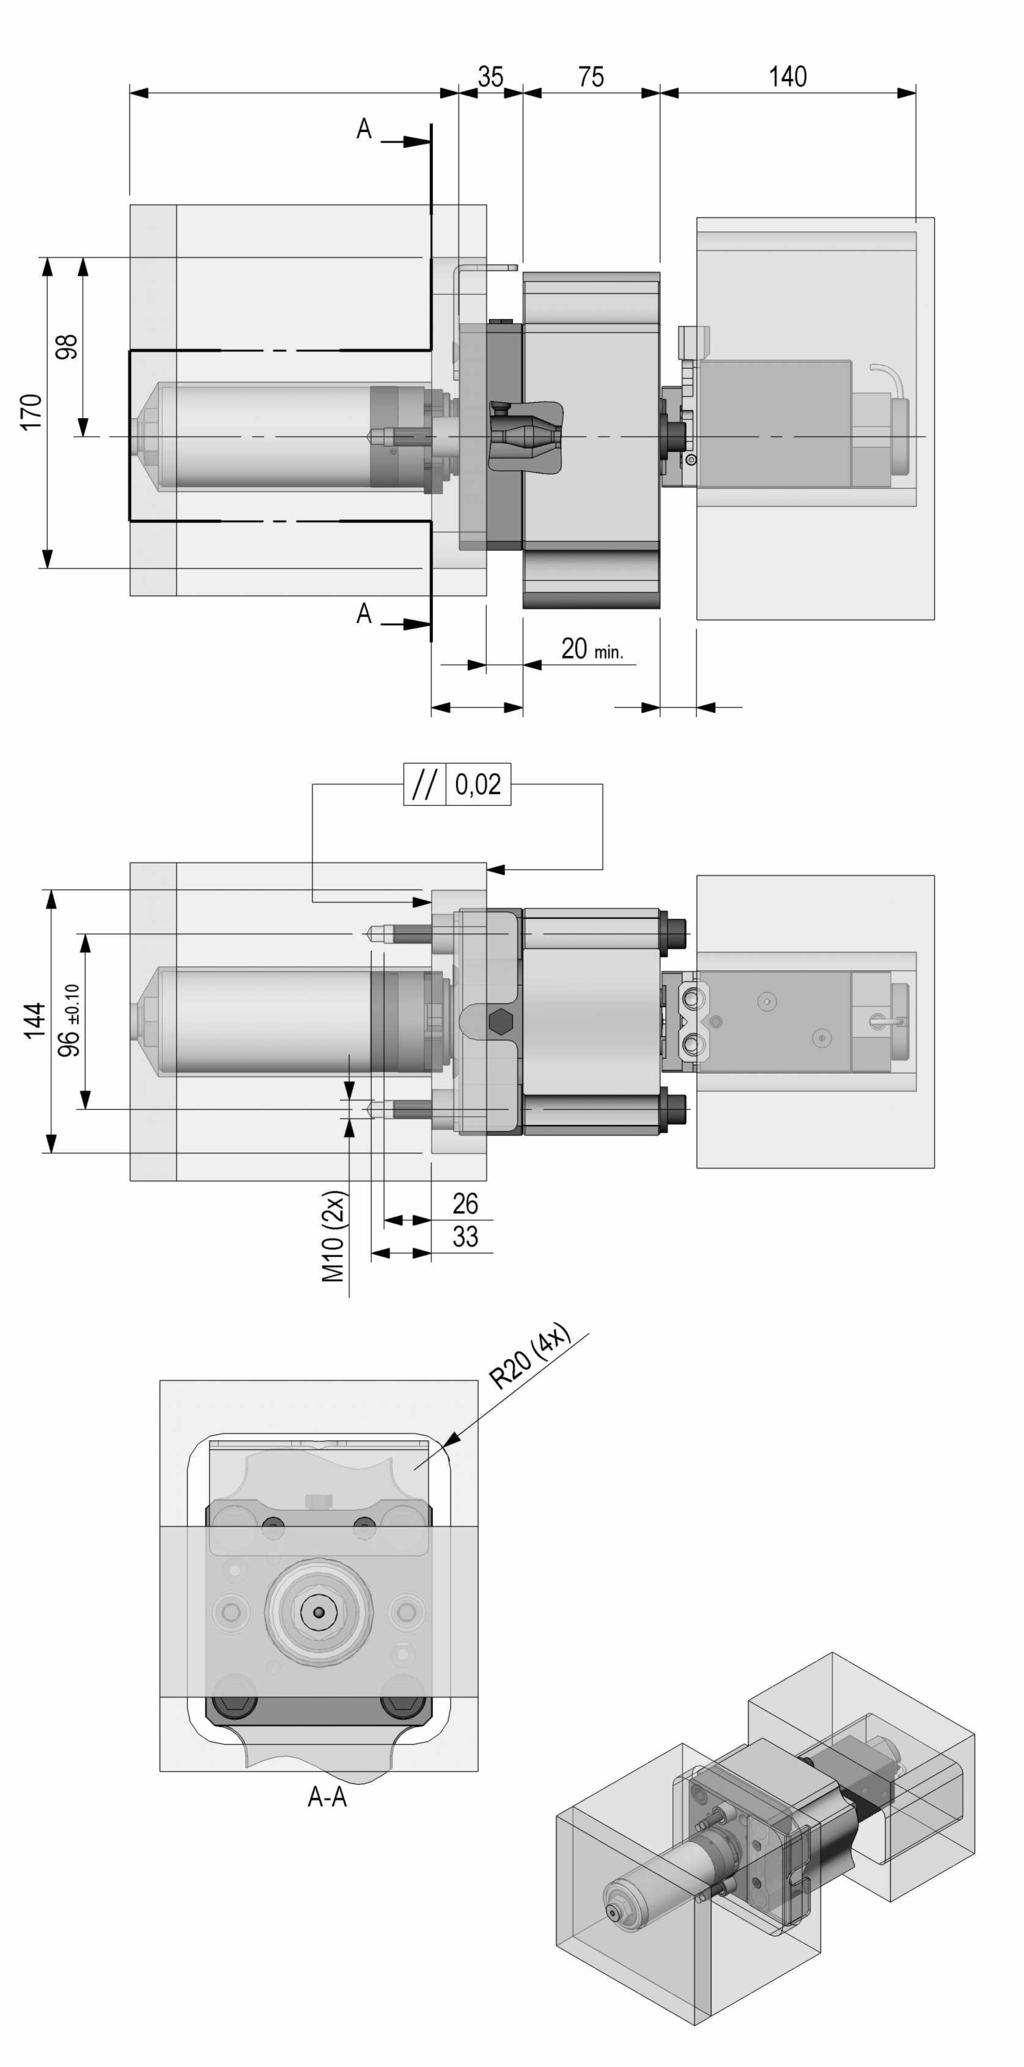 flow valve module for valve gate nozzles of the following class: Class 6 E ènozzle size 6: Flow bore-ø 6 mm ènozzle style E: manifold nozzle, screw fit Class E ènozzle size : Flow bore-ø mm ènozzle